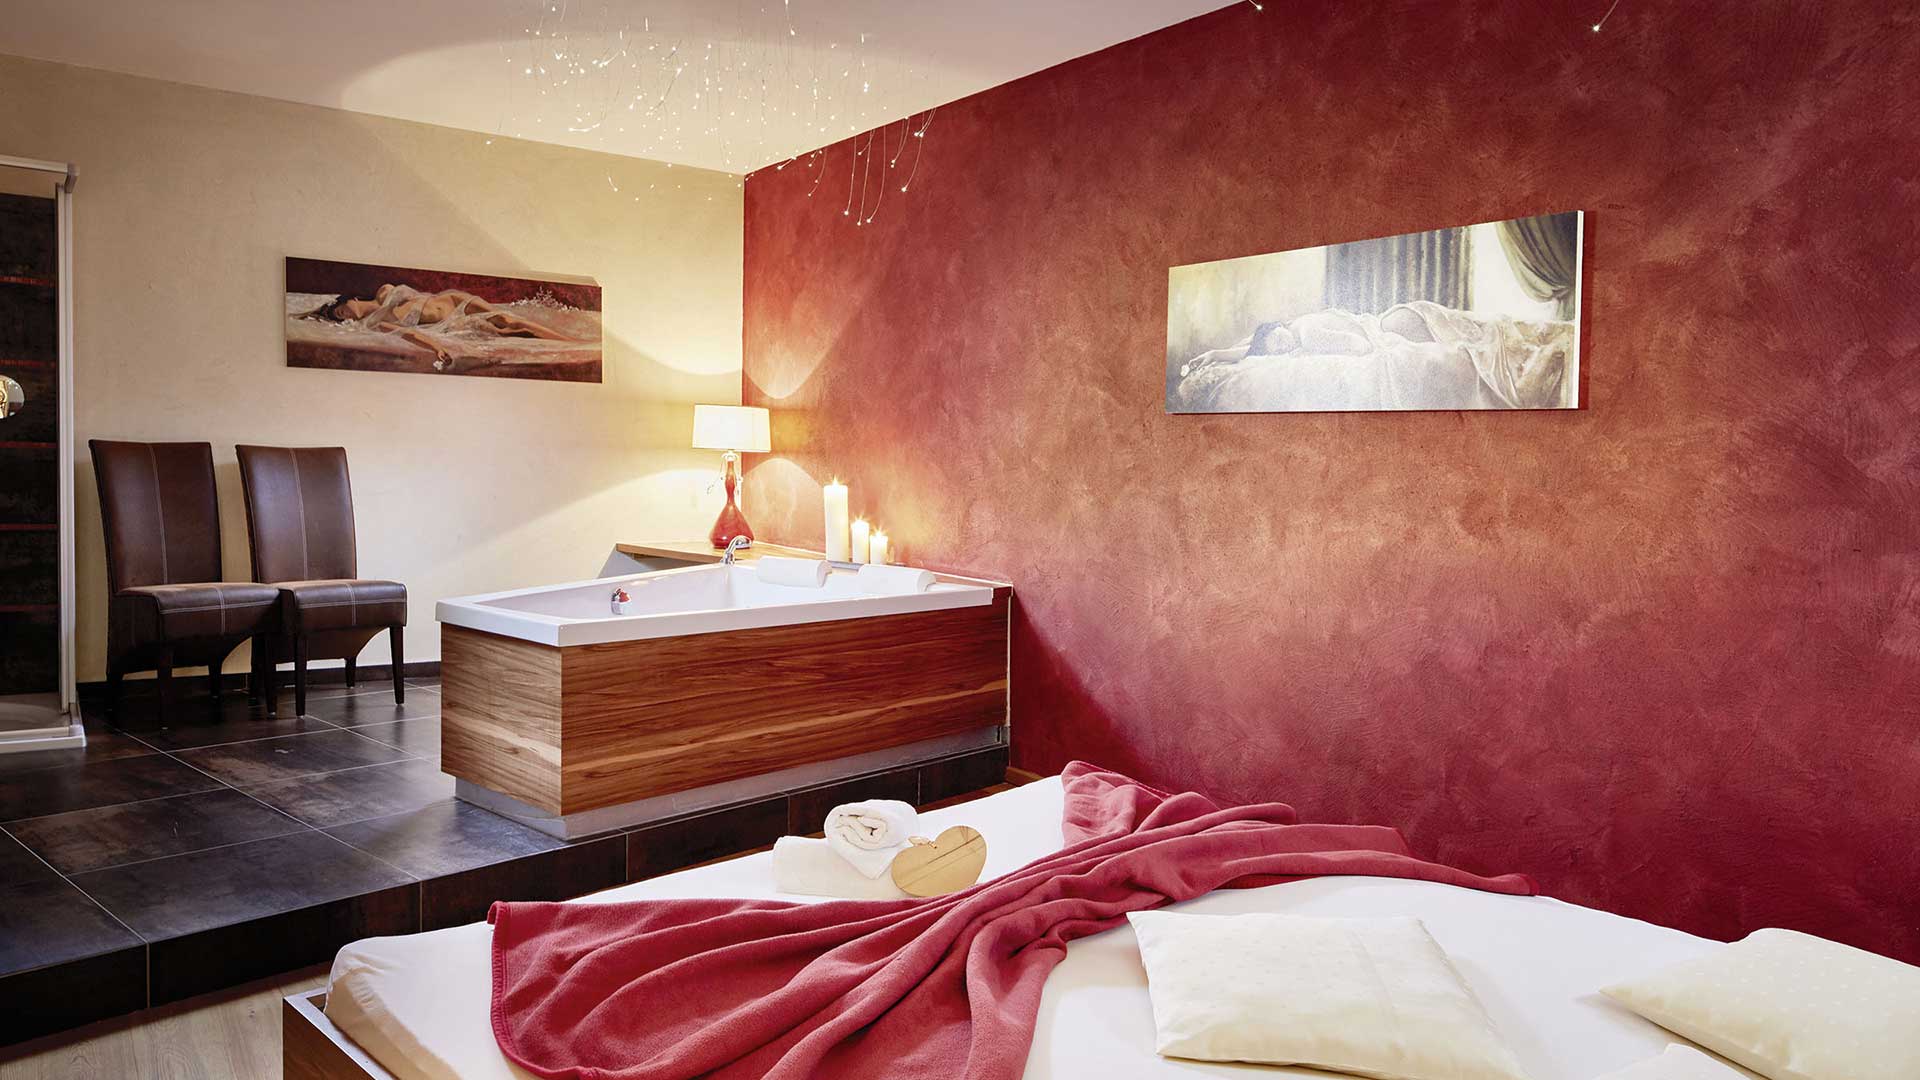 Suite im Hotel Goies mit eigener Badewanne im Schlafzimmer